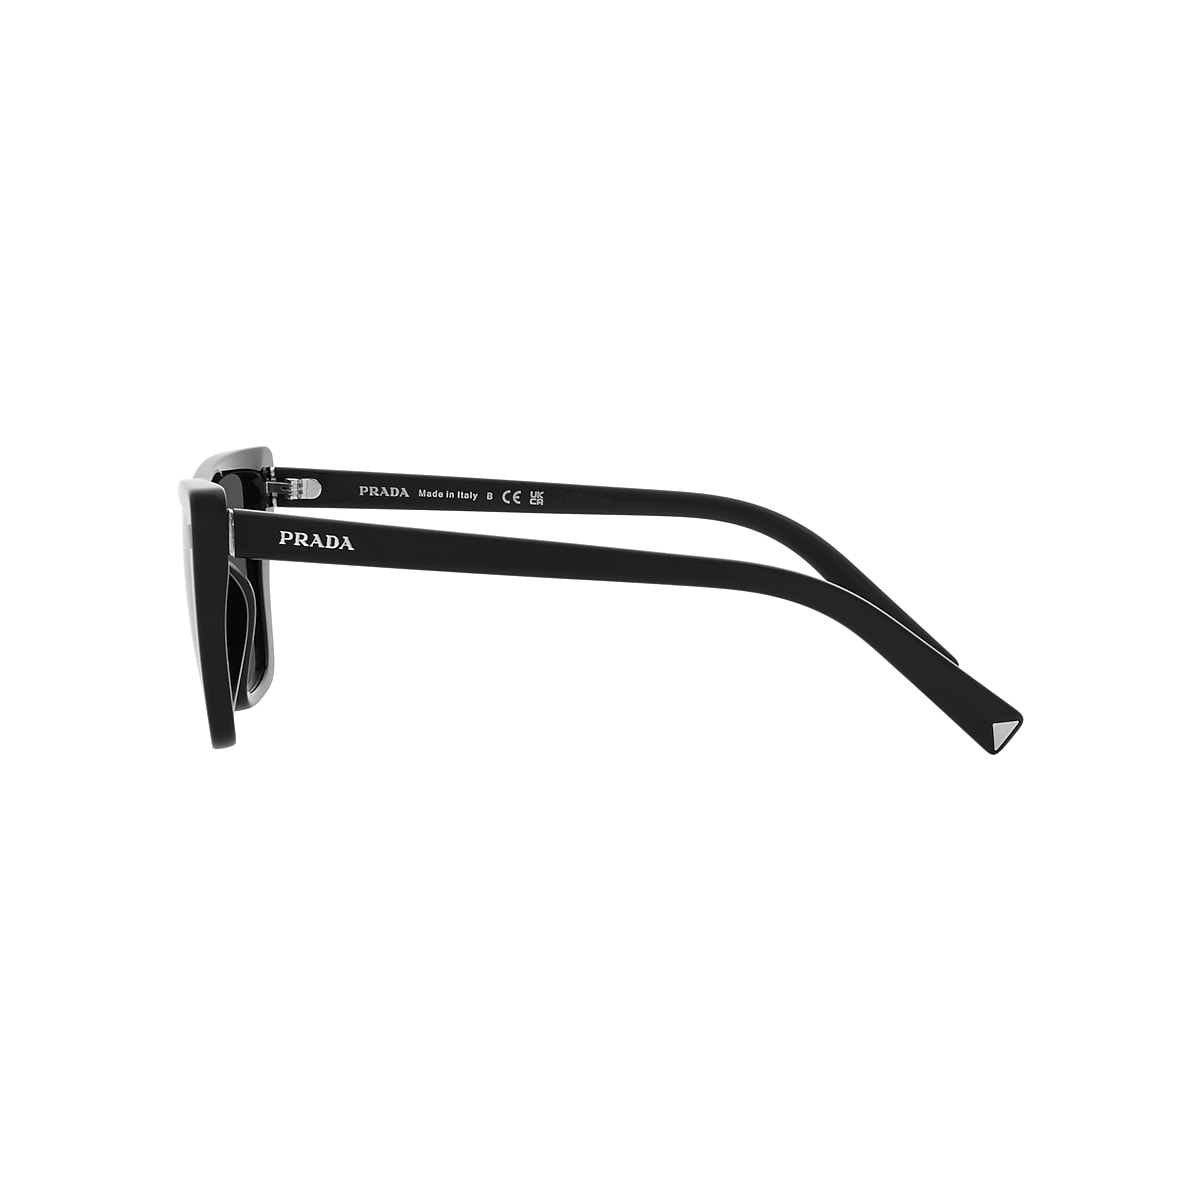 Prada PR 21ZS 55 Dark Grey & Black Sunglasses | Sunglass Hut USA